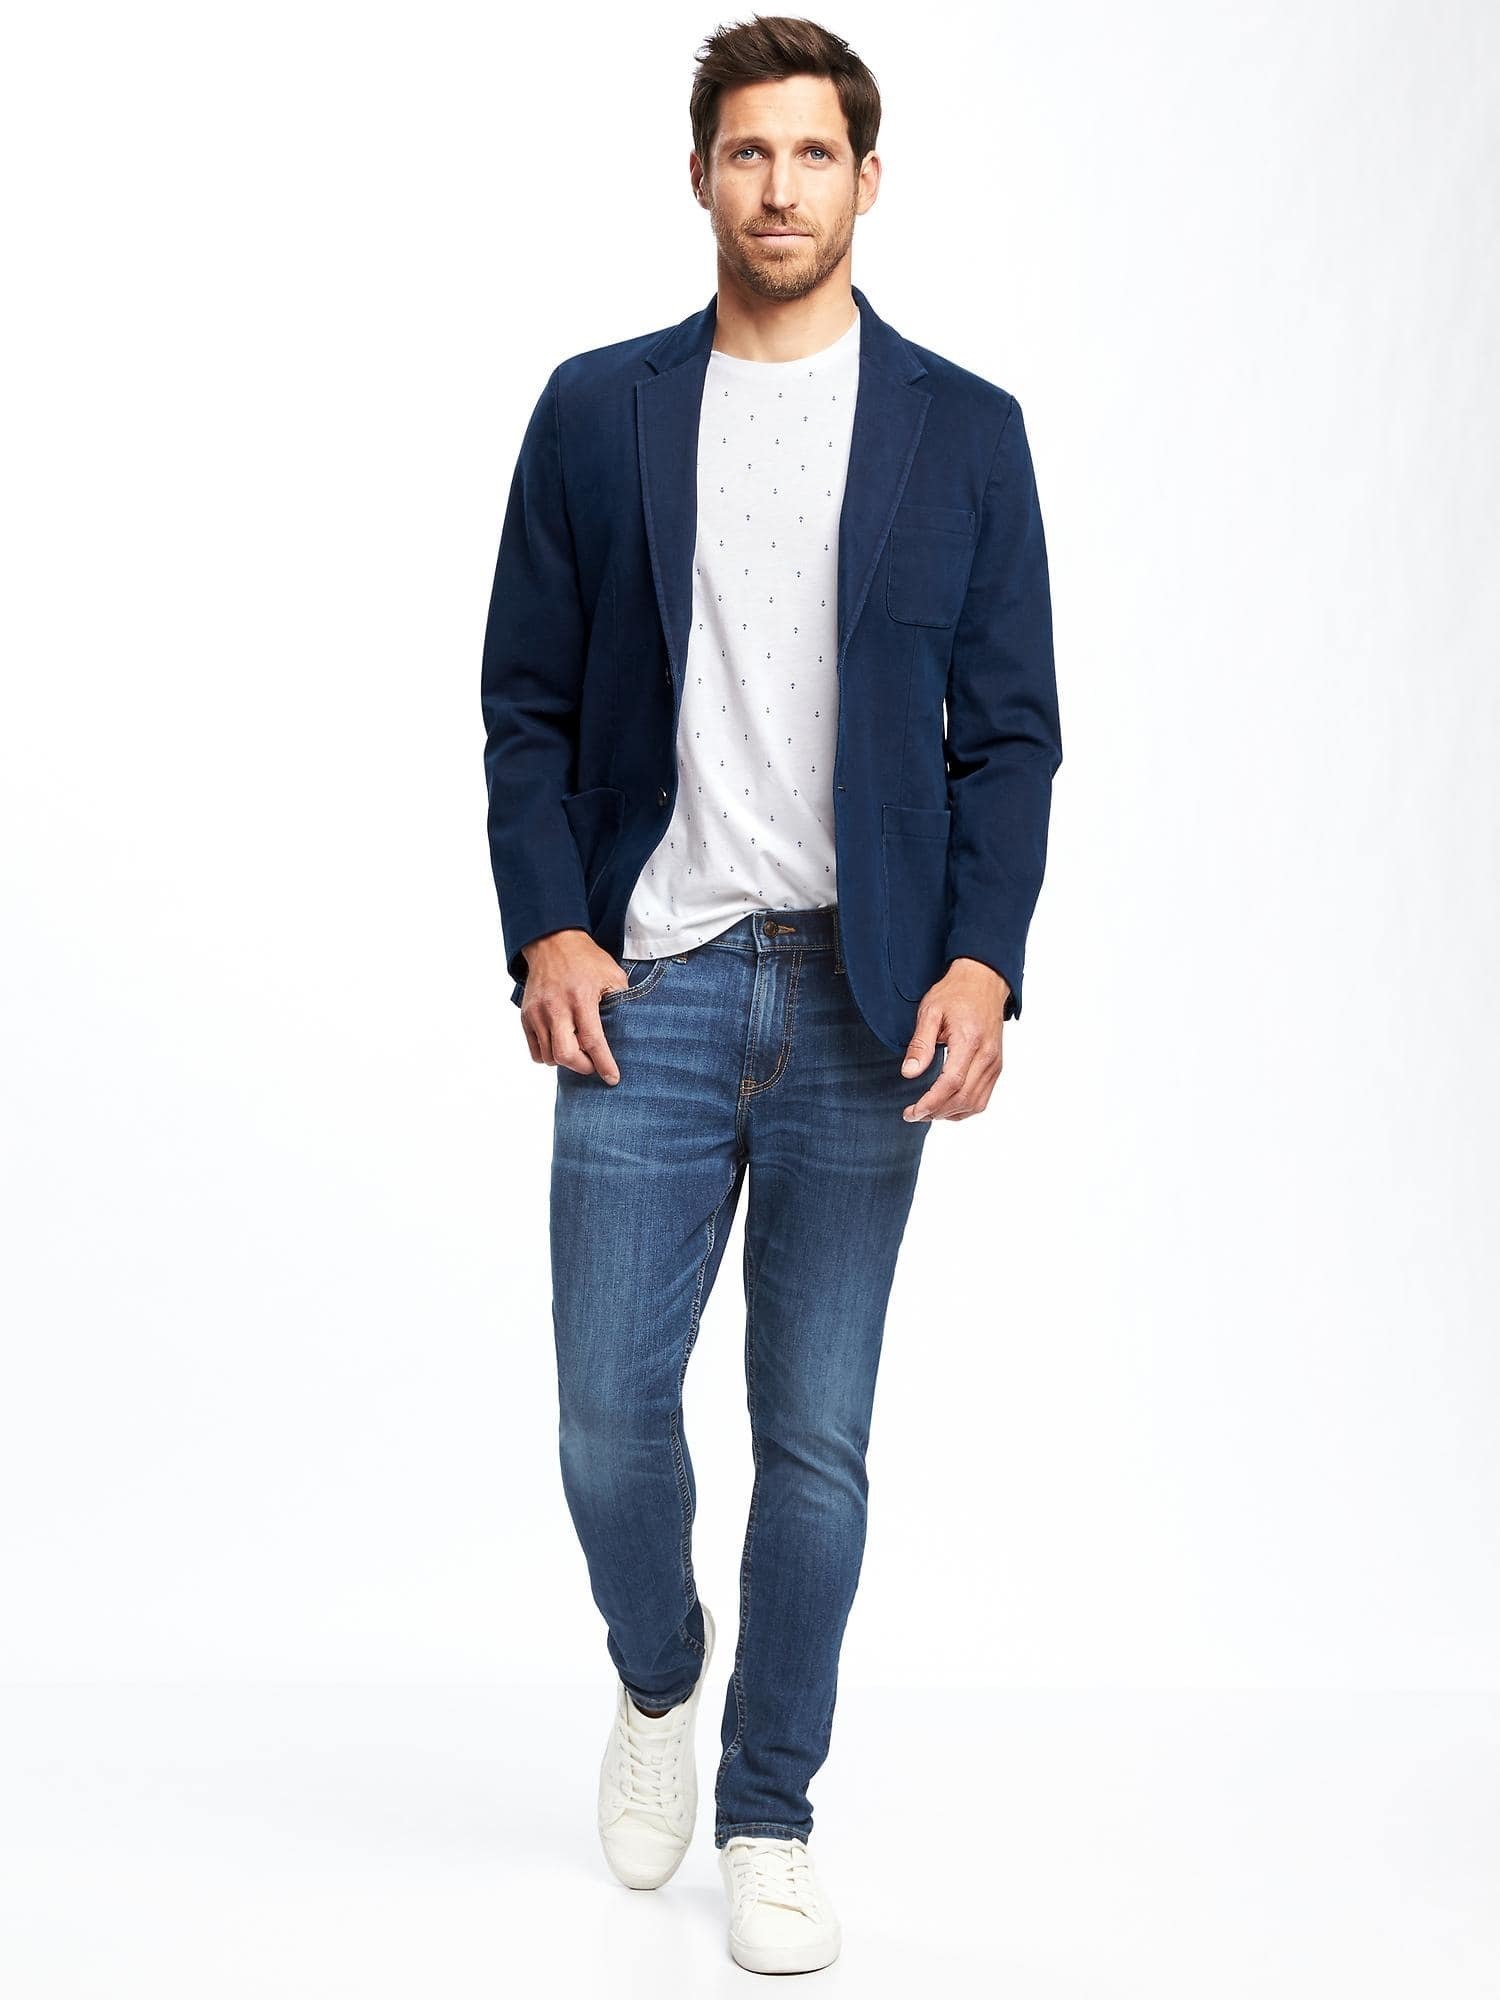 Белые кроссовки джинсы и пиджак мужской - 83 фото